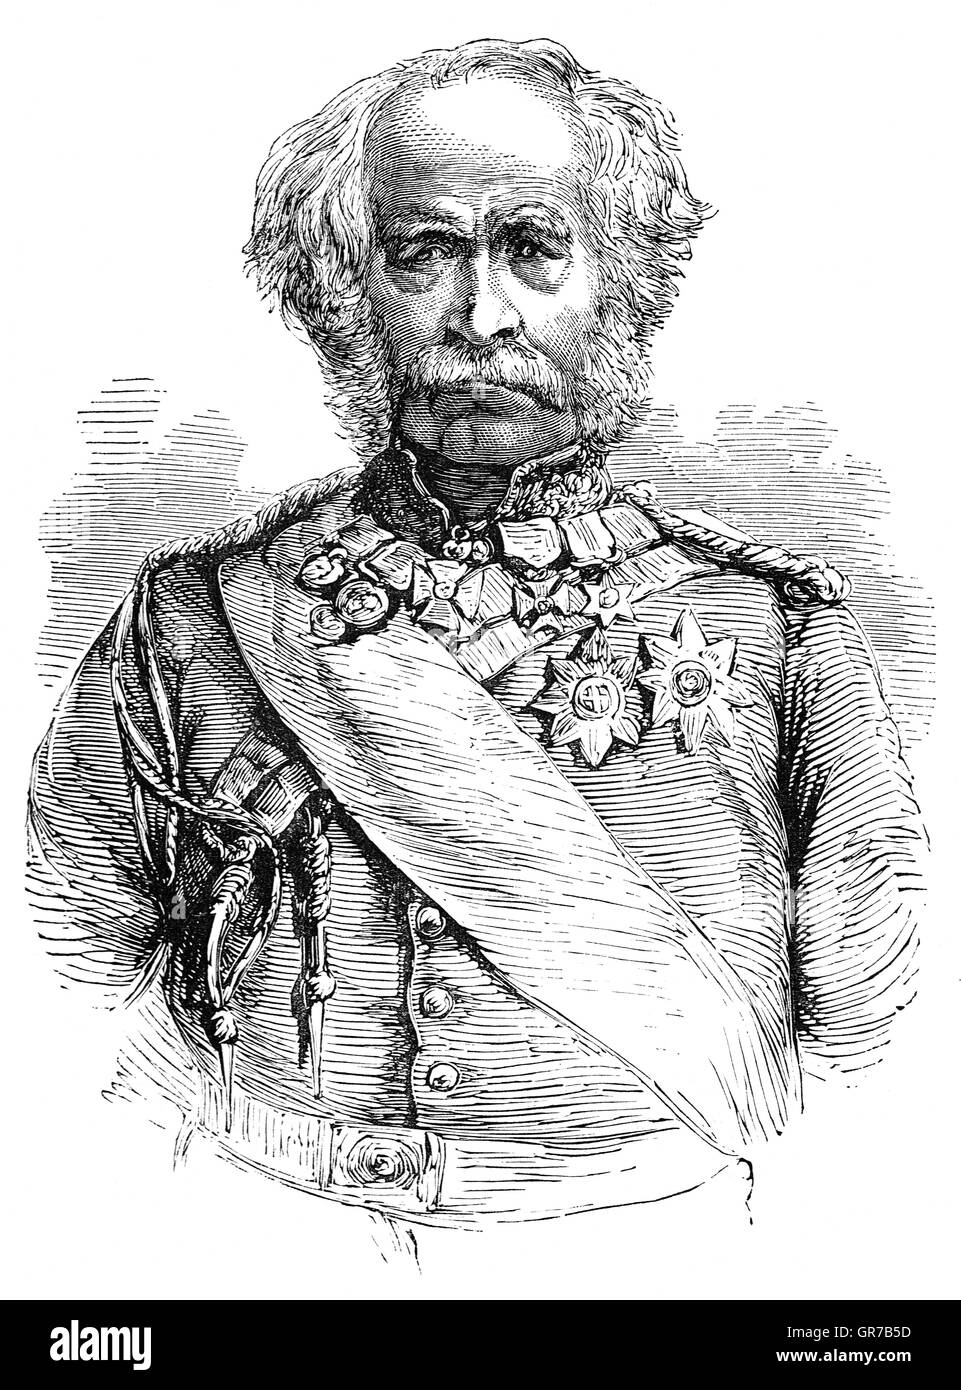 Feldmarschall Hugh Gough, 1. Viscount Gough,(1779 – 1869) war ein britischer Offizier. Während des Unabhängigkeitskrieges kommandierte er das 2. Bataillon des 87. (Royal Irish Fusiliers) Regiment des Fusses. Nach seiner Tätigkeit als Oberbefehlshaber der britischen Streitkräfte in China während des ersten Opium-Krieg, er wurde Oberbefehlshaber, Indien und führte die britischen Streitkräfte im Kampf gegen die Mahrattas besiegen entscheidend zum Abschluss der Kampagne Gwalior und befahl dann die Truppen, die Sikhs während der erste Anglo-Sikh-Krieg und der zweite Anglo-Sikh-Krieg besiegt. Stockfoto